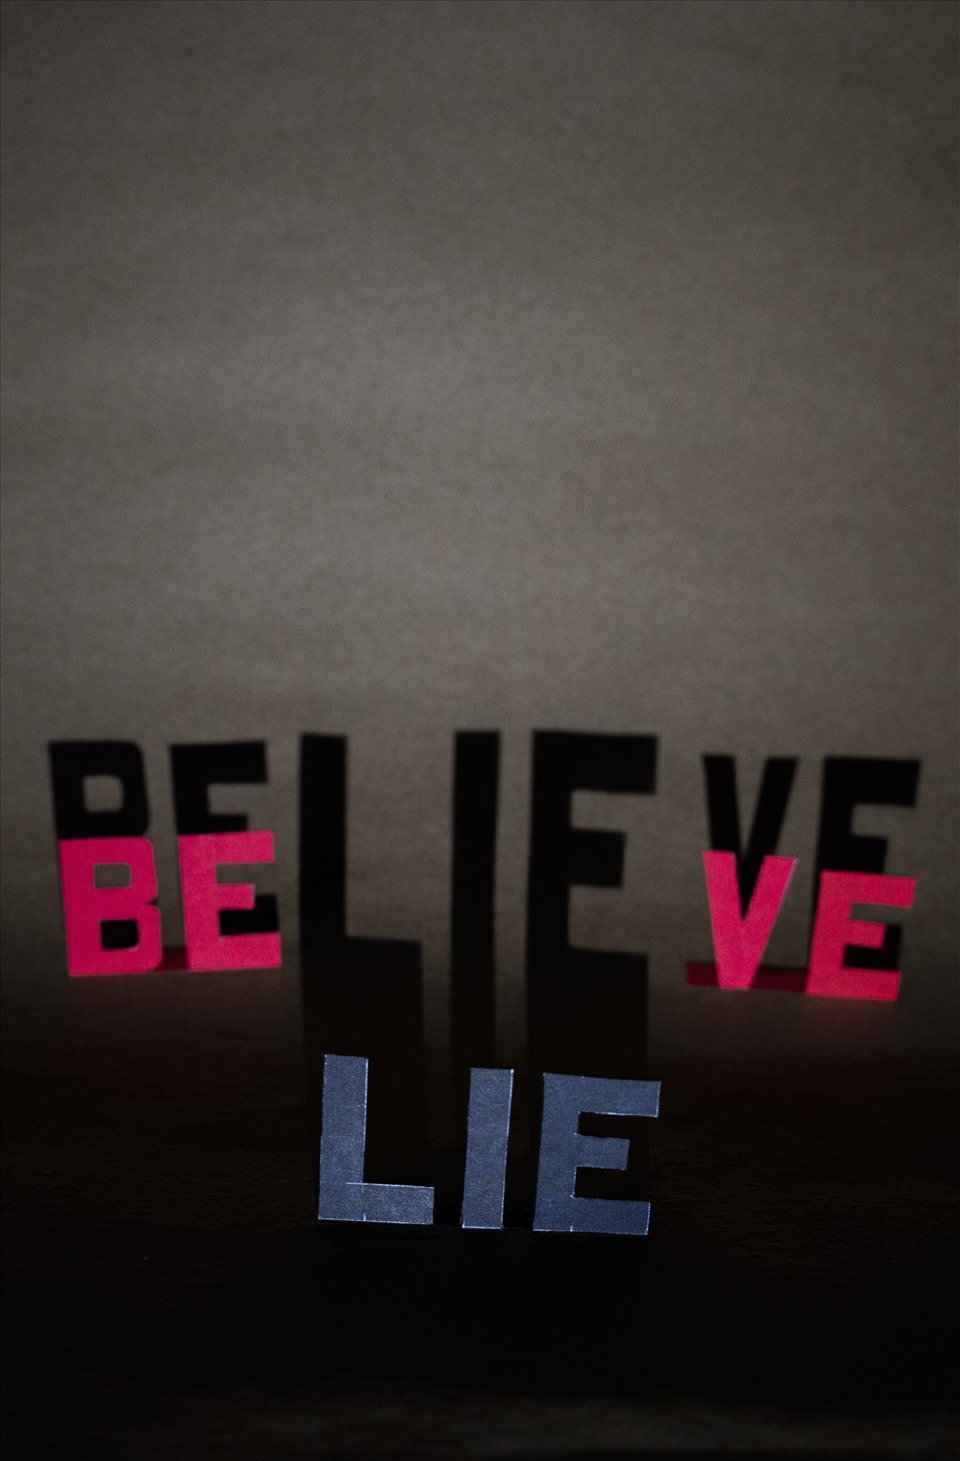 False beliefs: Từ “Believe” trong tiếng Anh có nghĩa là niềm tin, nhưng trong từ “believe” lại có “lie” nghĩa là nói dối, sự sai lầm. Vậy nên khi sống trong thế giới phẳng, trước khi đặt niềm tin vào bất cứ thông tin nào hãy kiểm chứng nó xem có thông tin giả dối nào đang khoác trên mình tấm áo sự thật để lấy được lòng tin của chúng ta không.